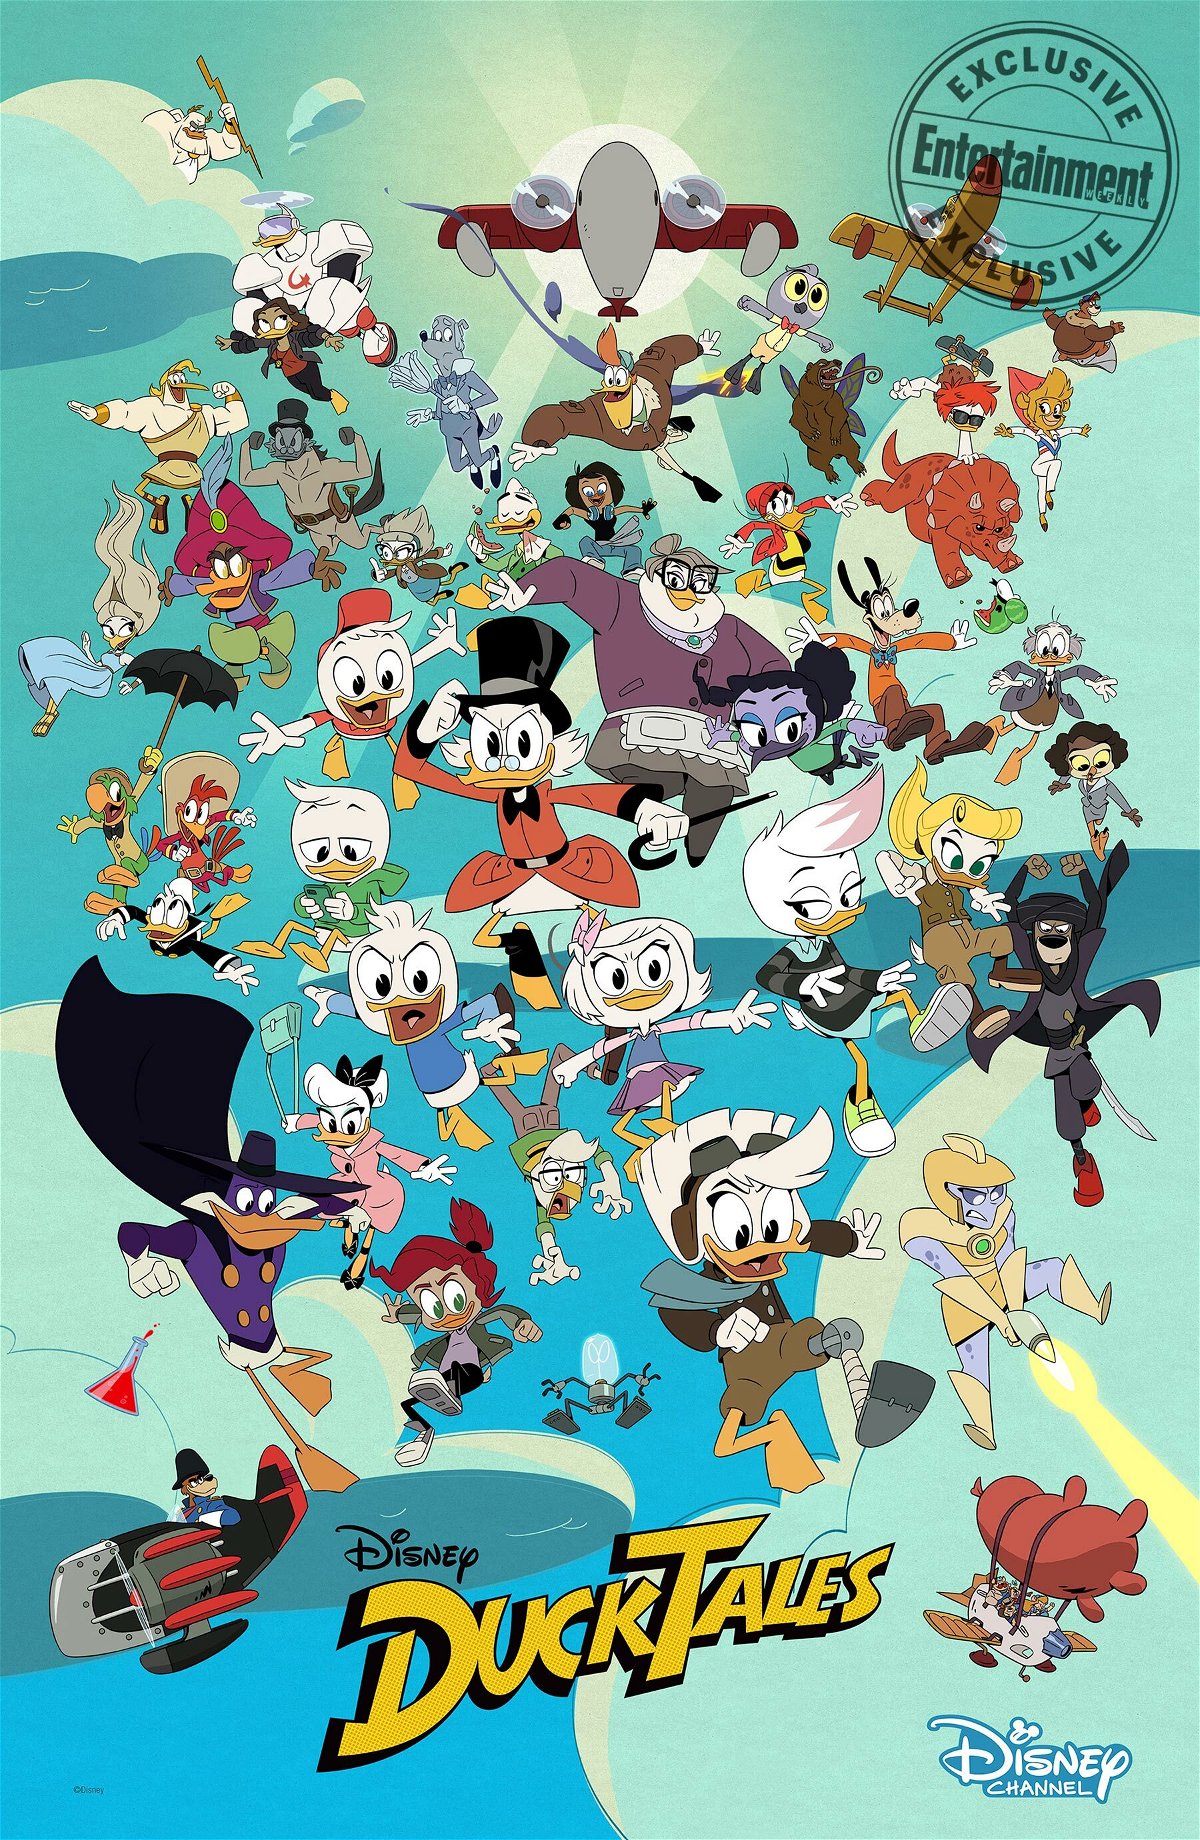 I nuovi personaggi di Ducktales